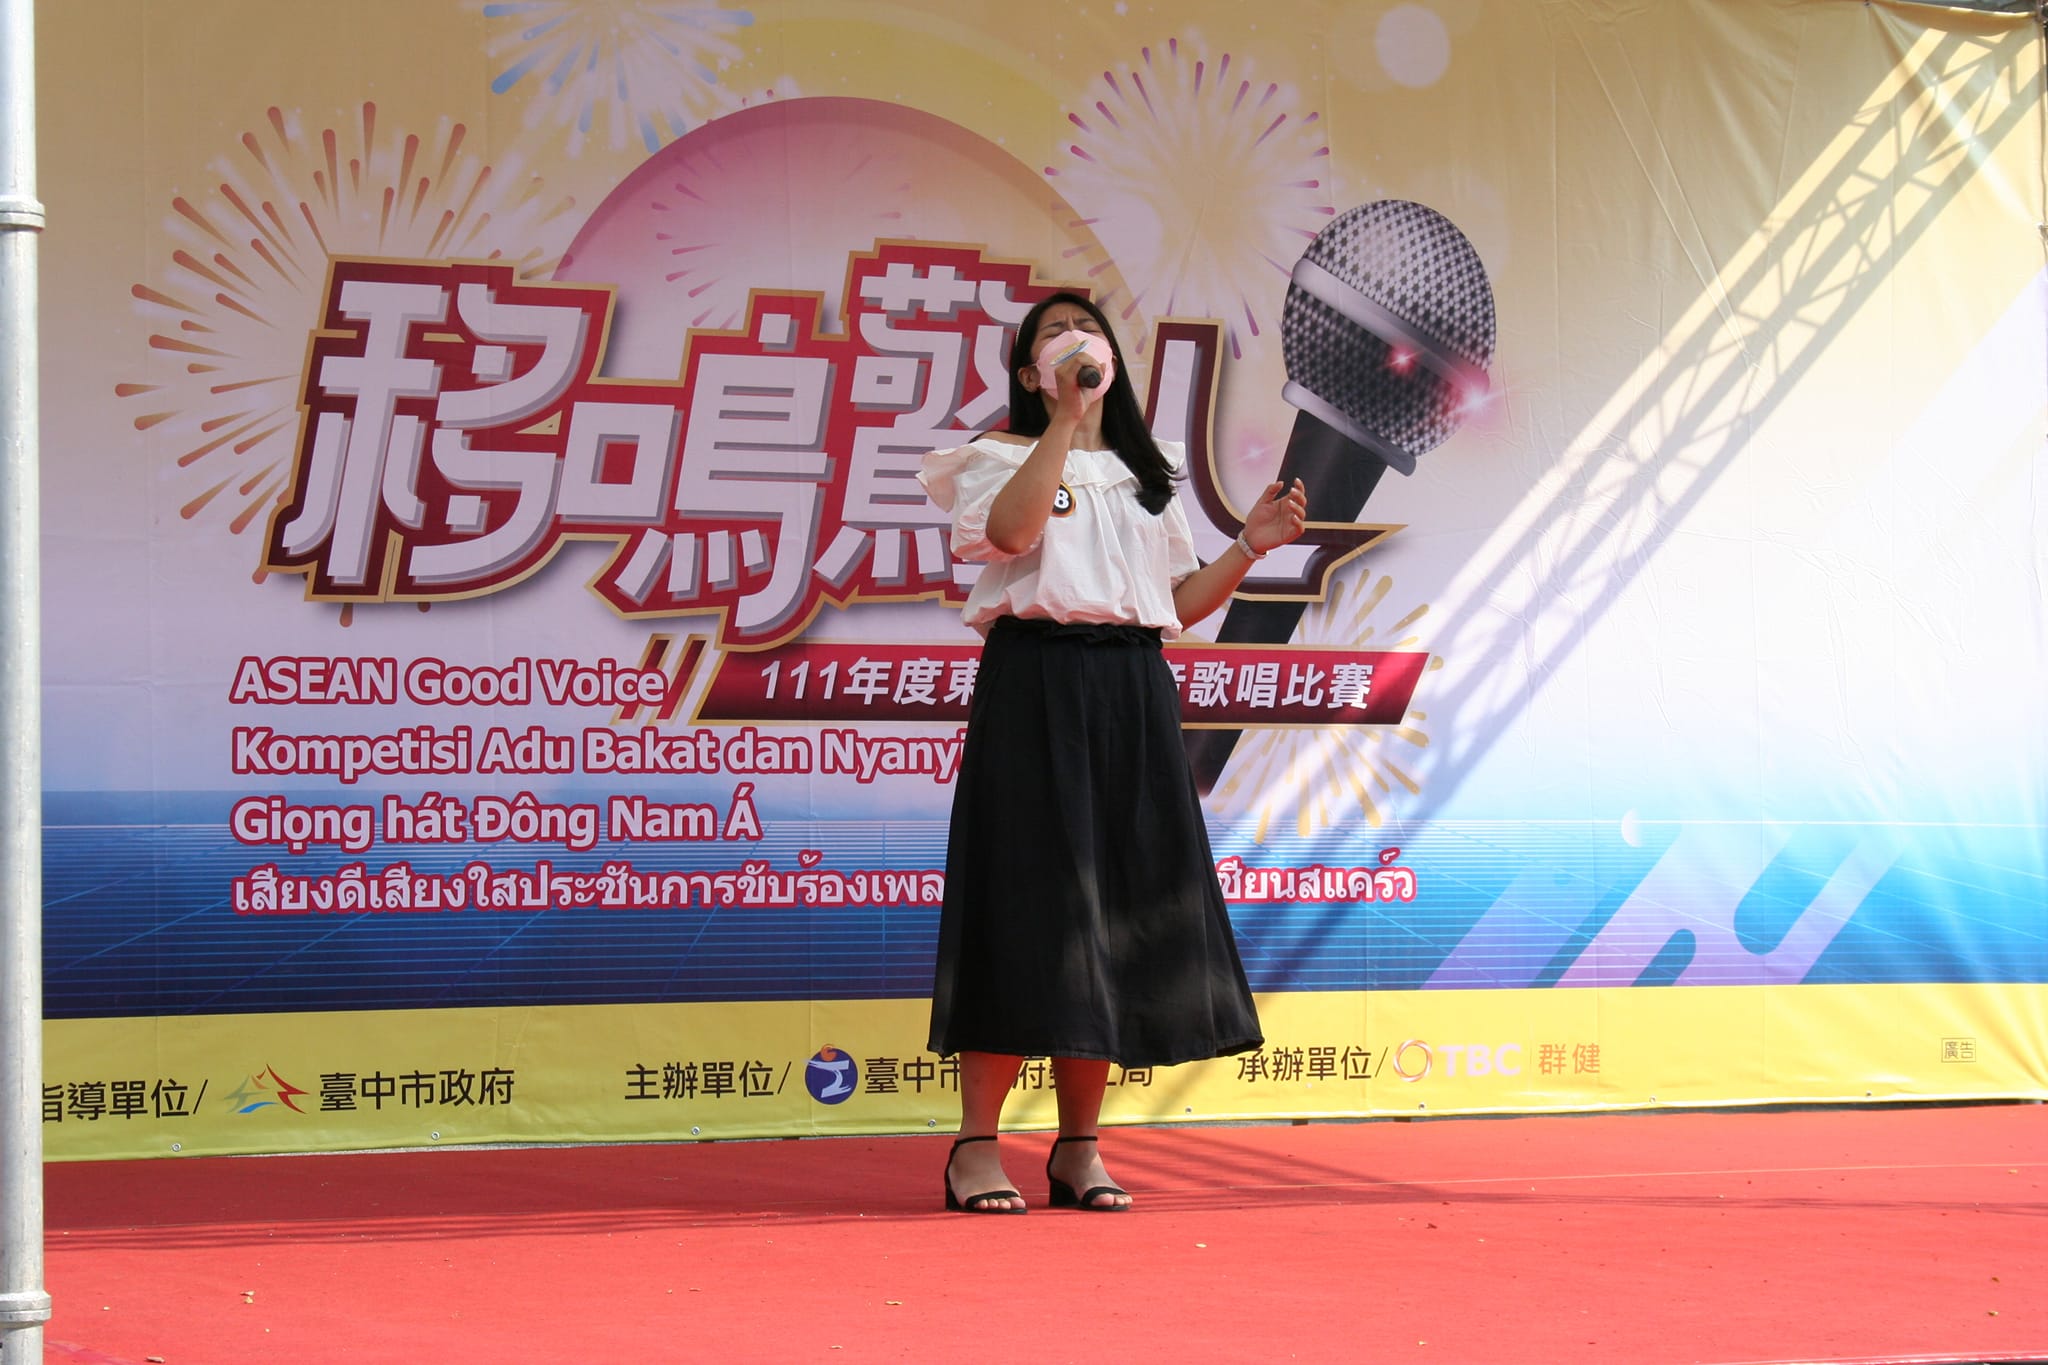 การประกวดร้องเพลงอาเซียนเสียงดี เชิญผู้ตั้งถิ่นฐานใหม่ แรงงานต่างชาติร่วมโชว์พลังเสียง ภาพ／นำมาจากเฟสบุ๊ก台灣廣播公司台中電台